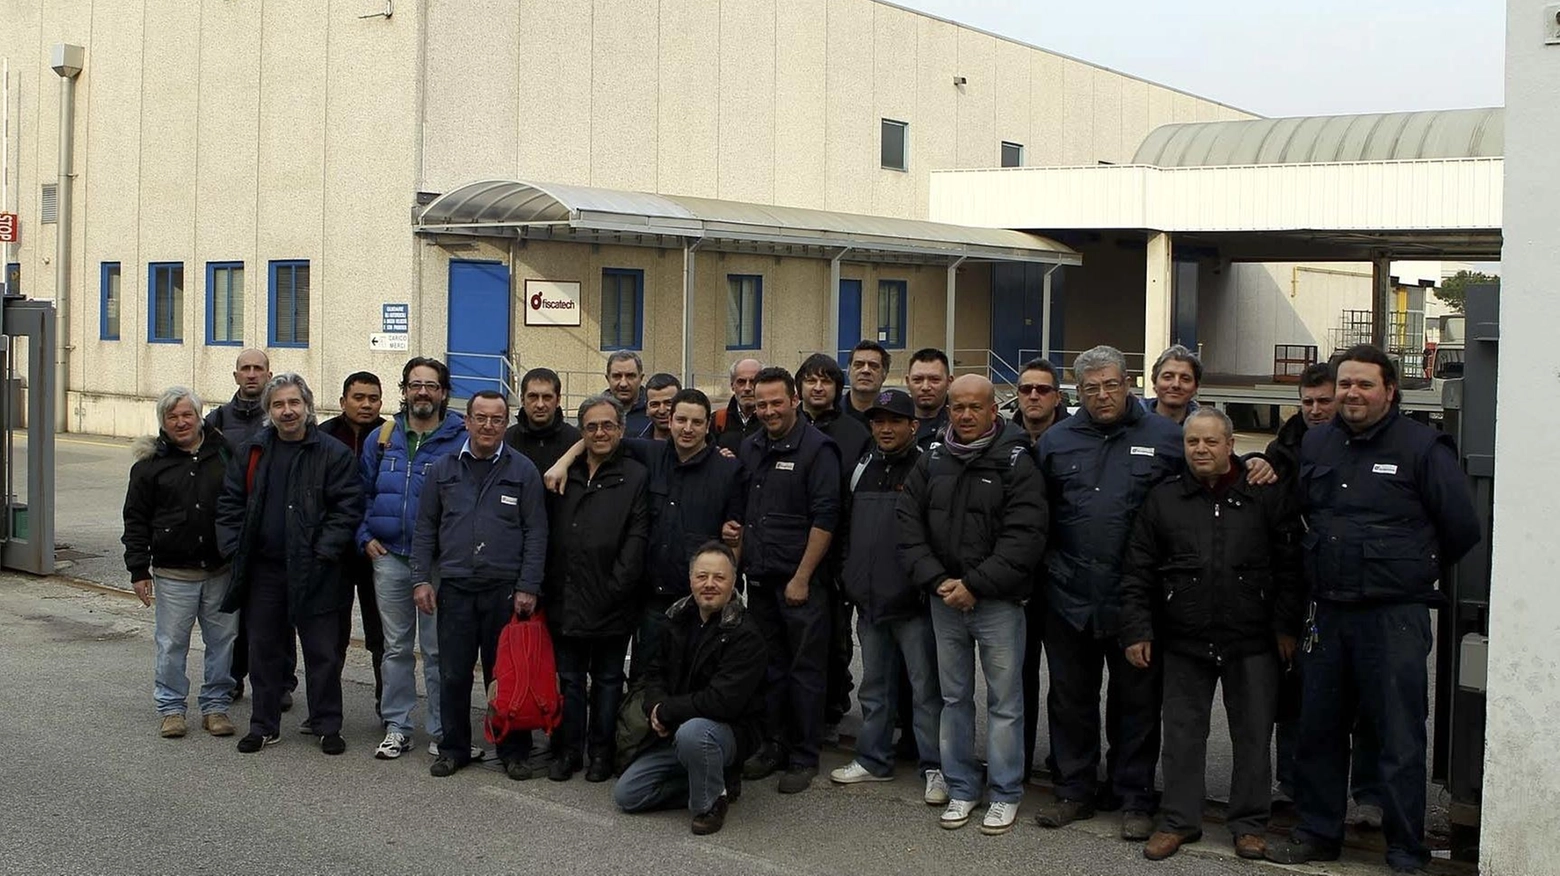 Annunciato il trasferimento di sessanta dipendenti nella sede vicina a Gorizia. Dalla produzione della gomma al grafene. Tagli del personale iniziati nel 2012.